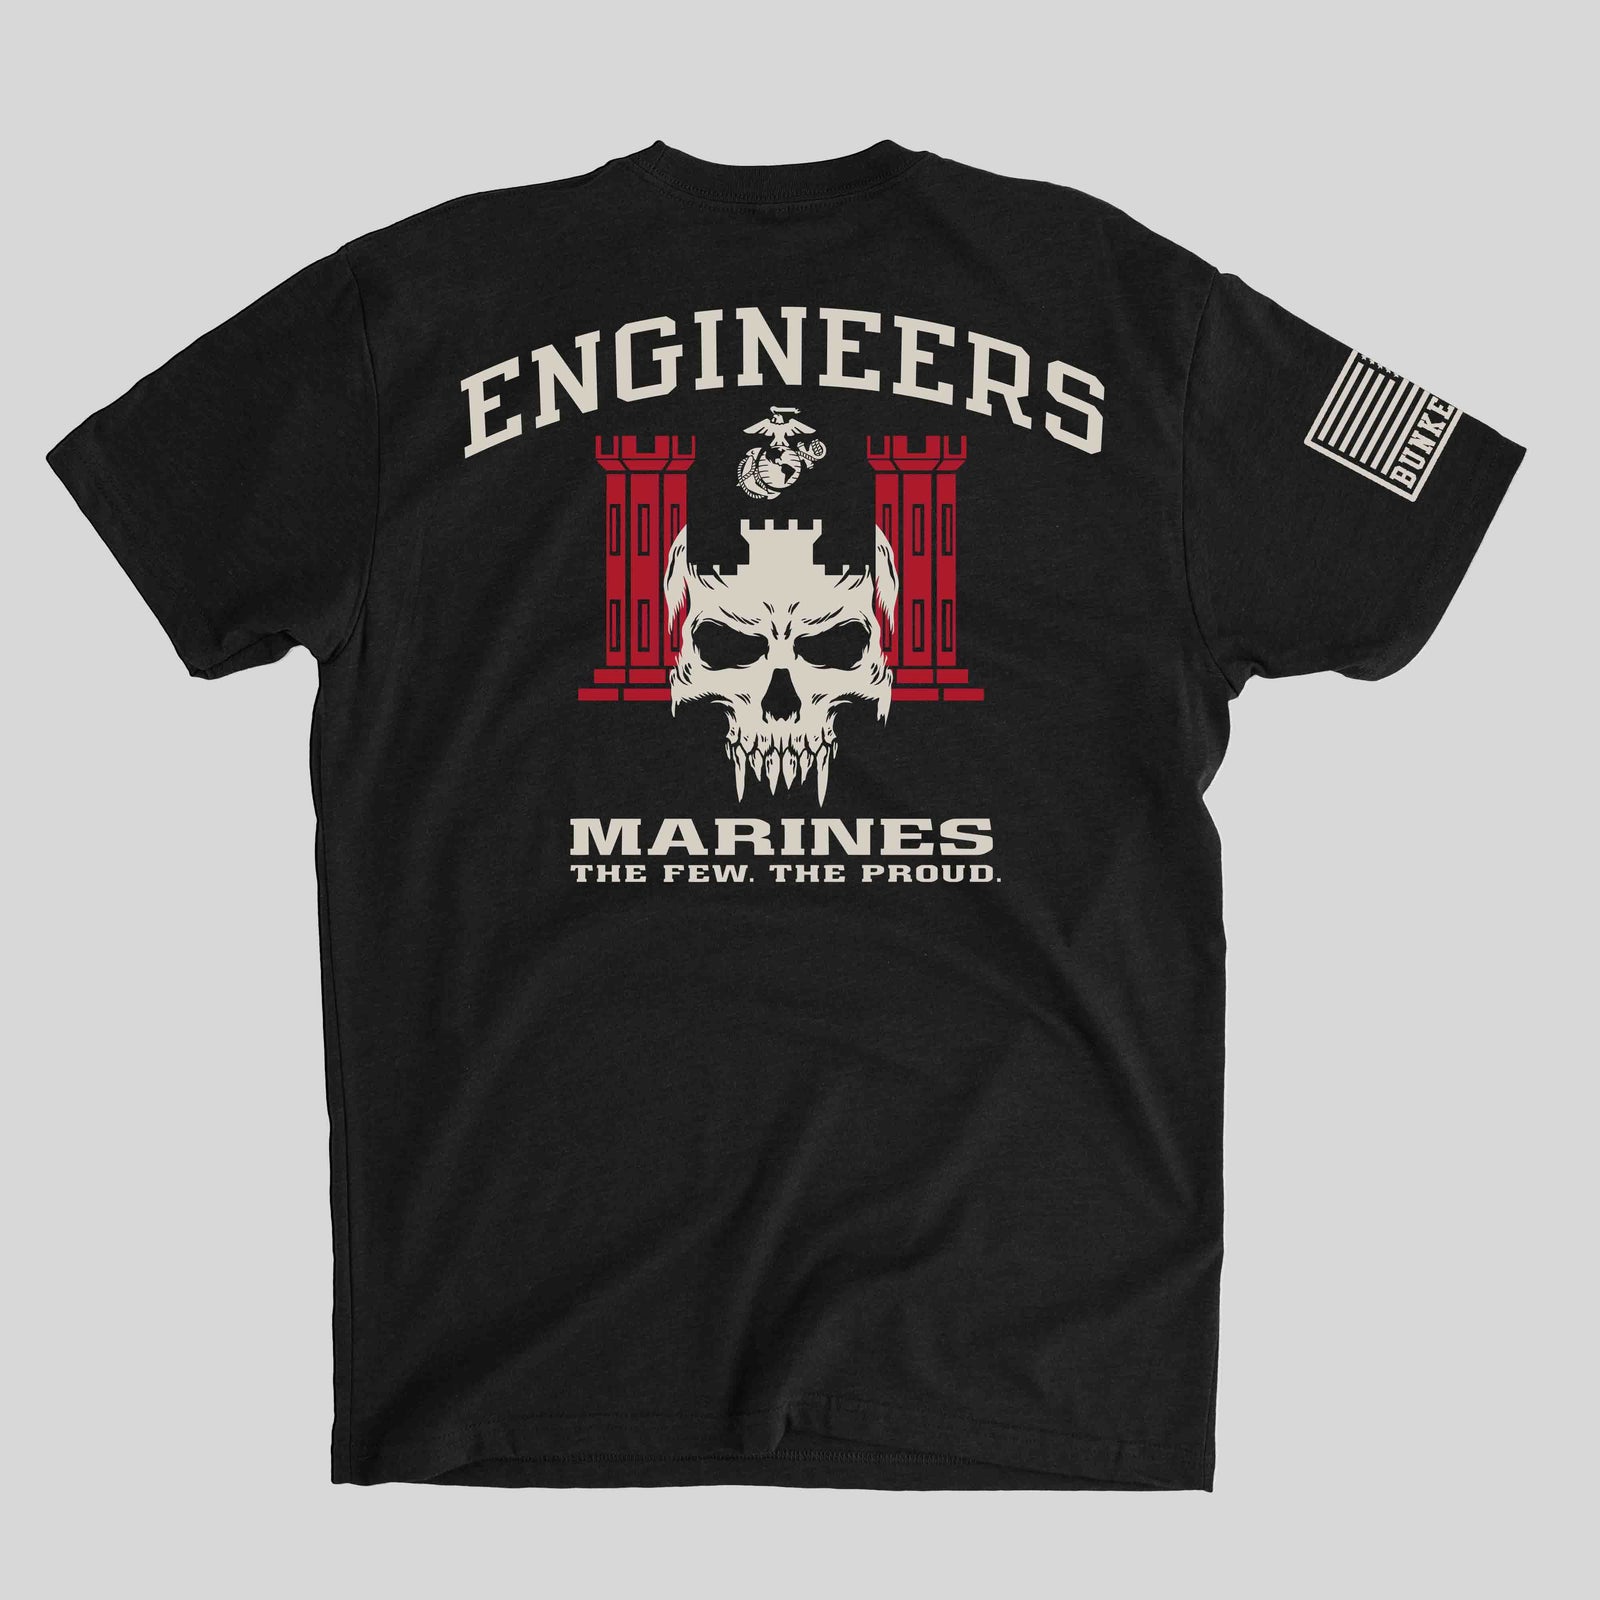 Engineers - Marines